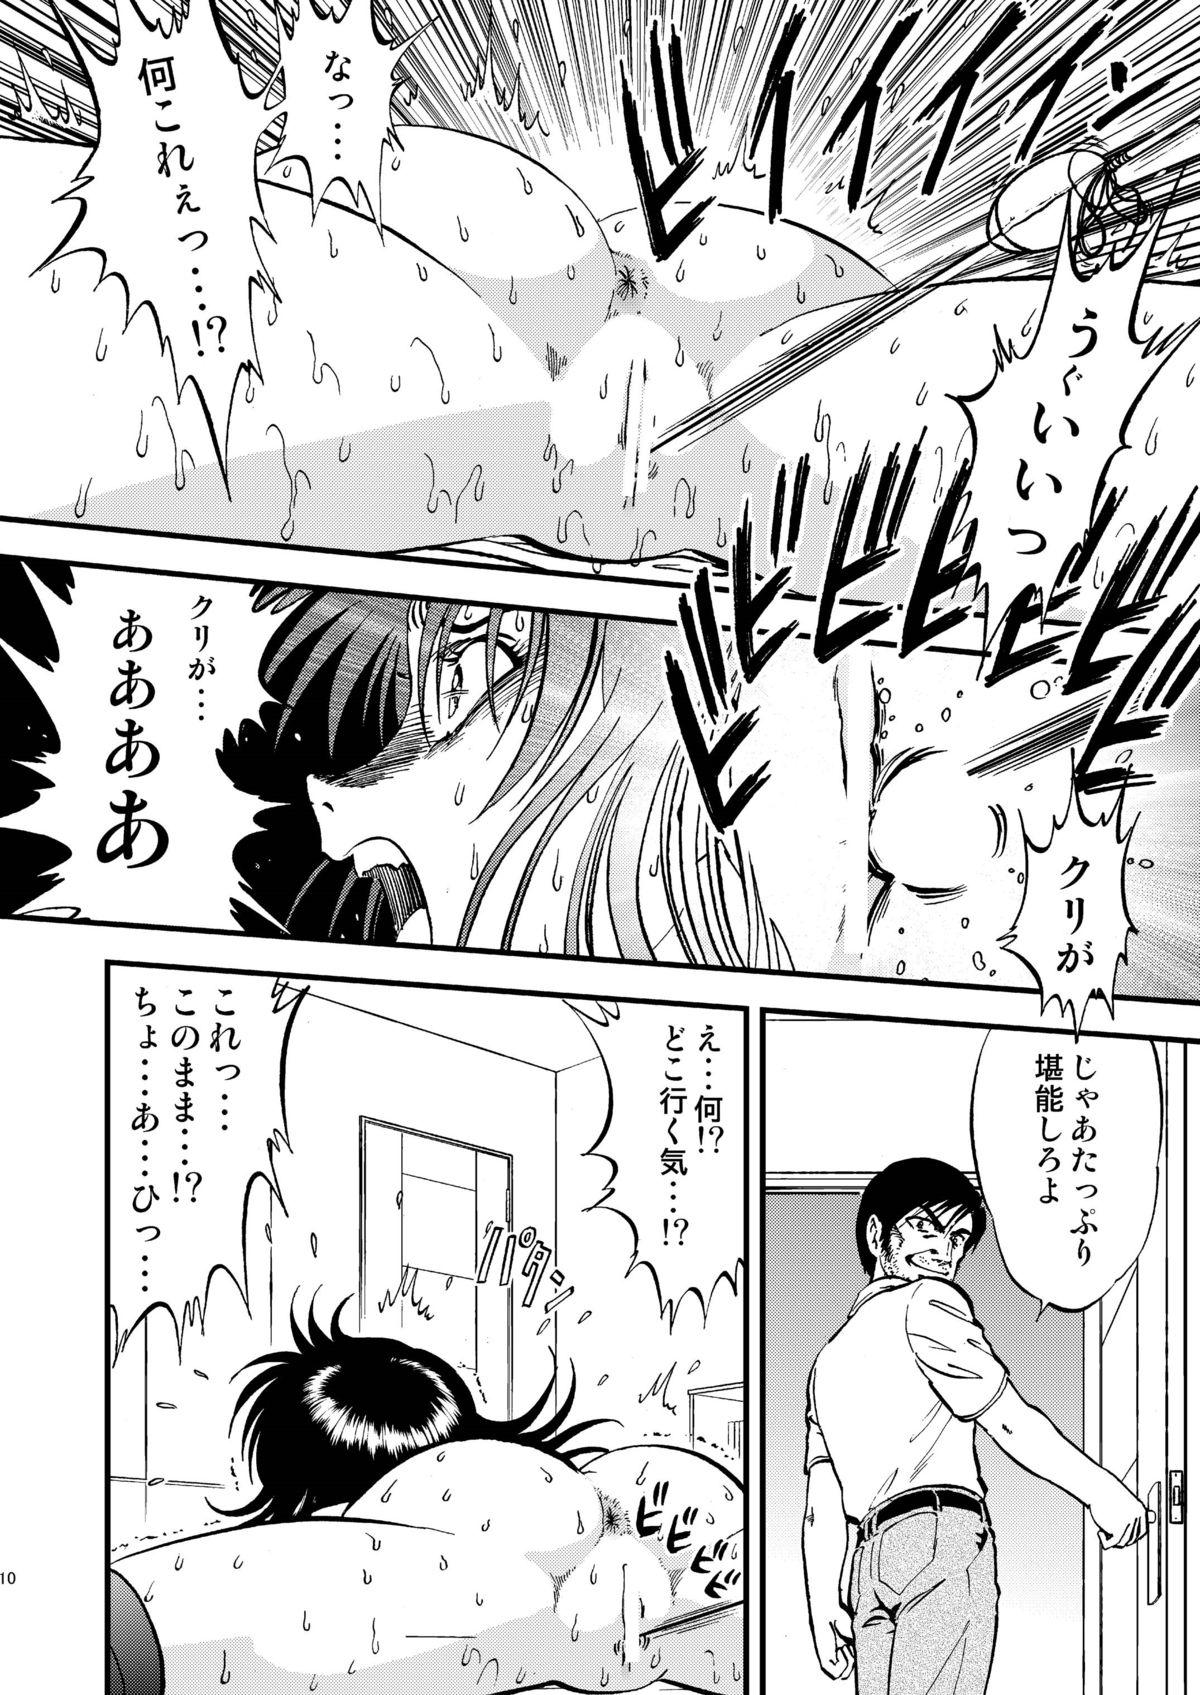 Retro Ura Kuri Hiroi 4 Mmd - Page 10